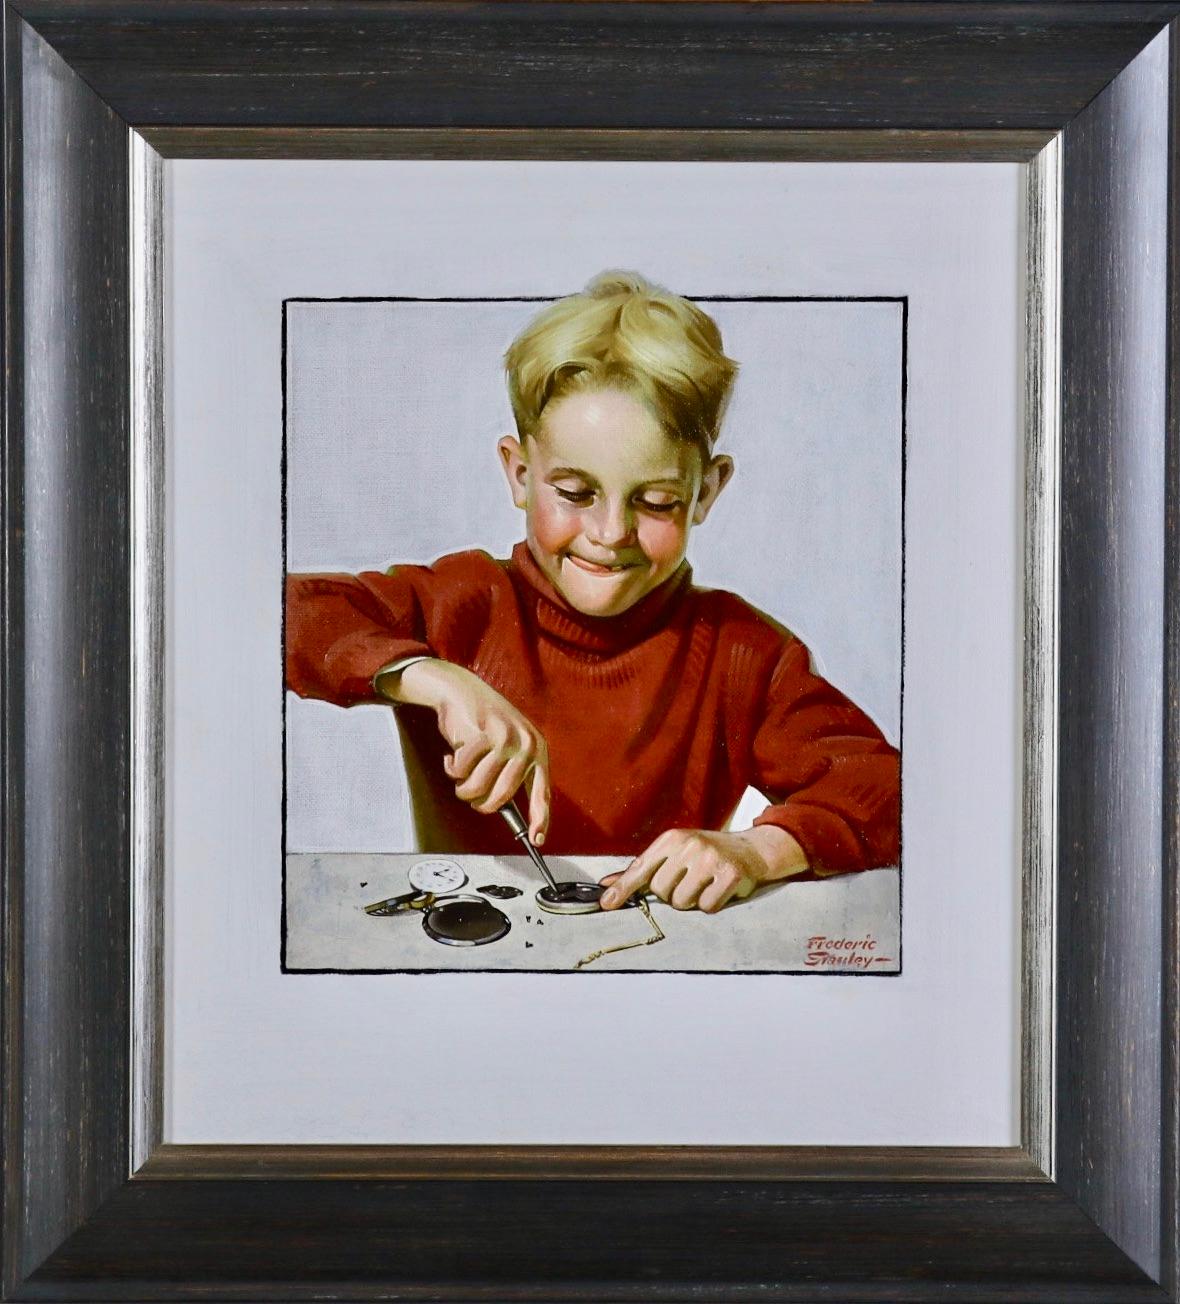 Junge repariert Uhr – Painting von Frederic Stanley